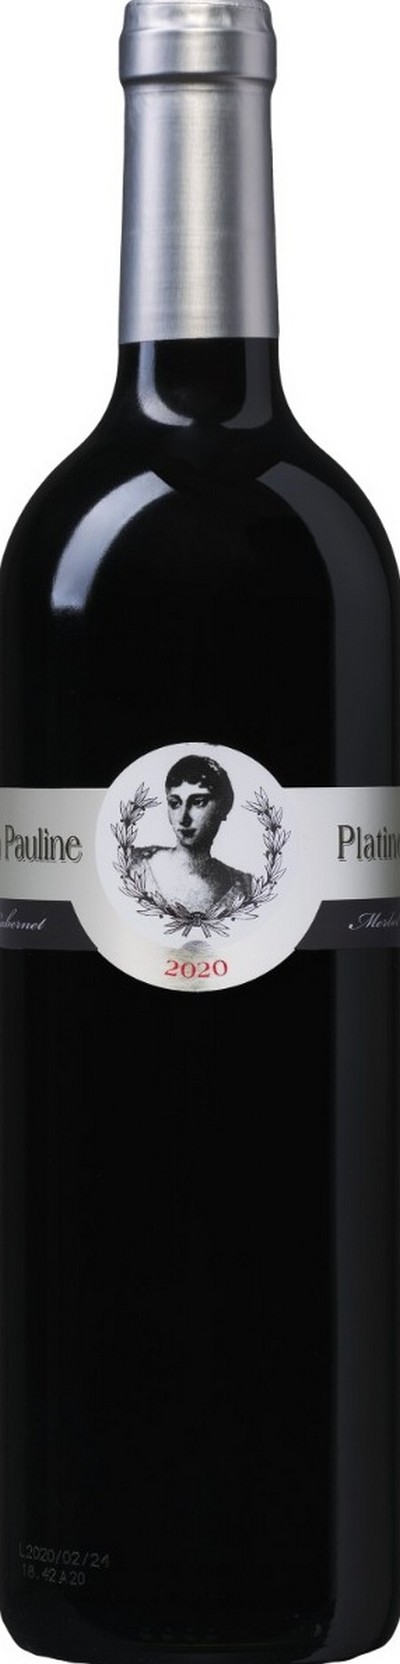 la-pauline-platine-merlot-cabernet-pays-doc-igp-2020